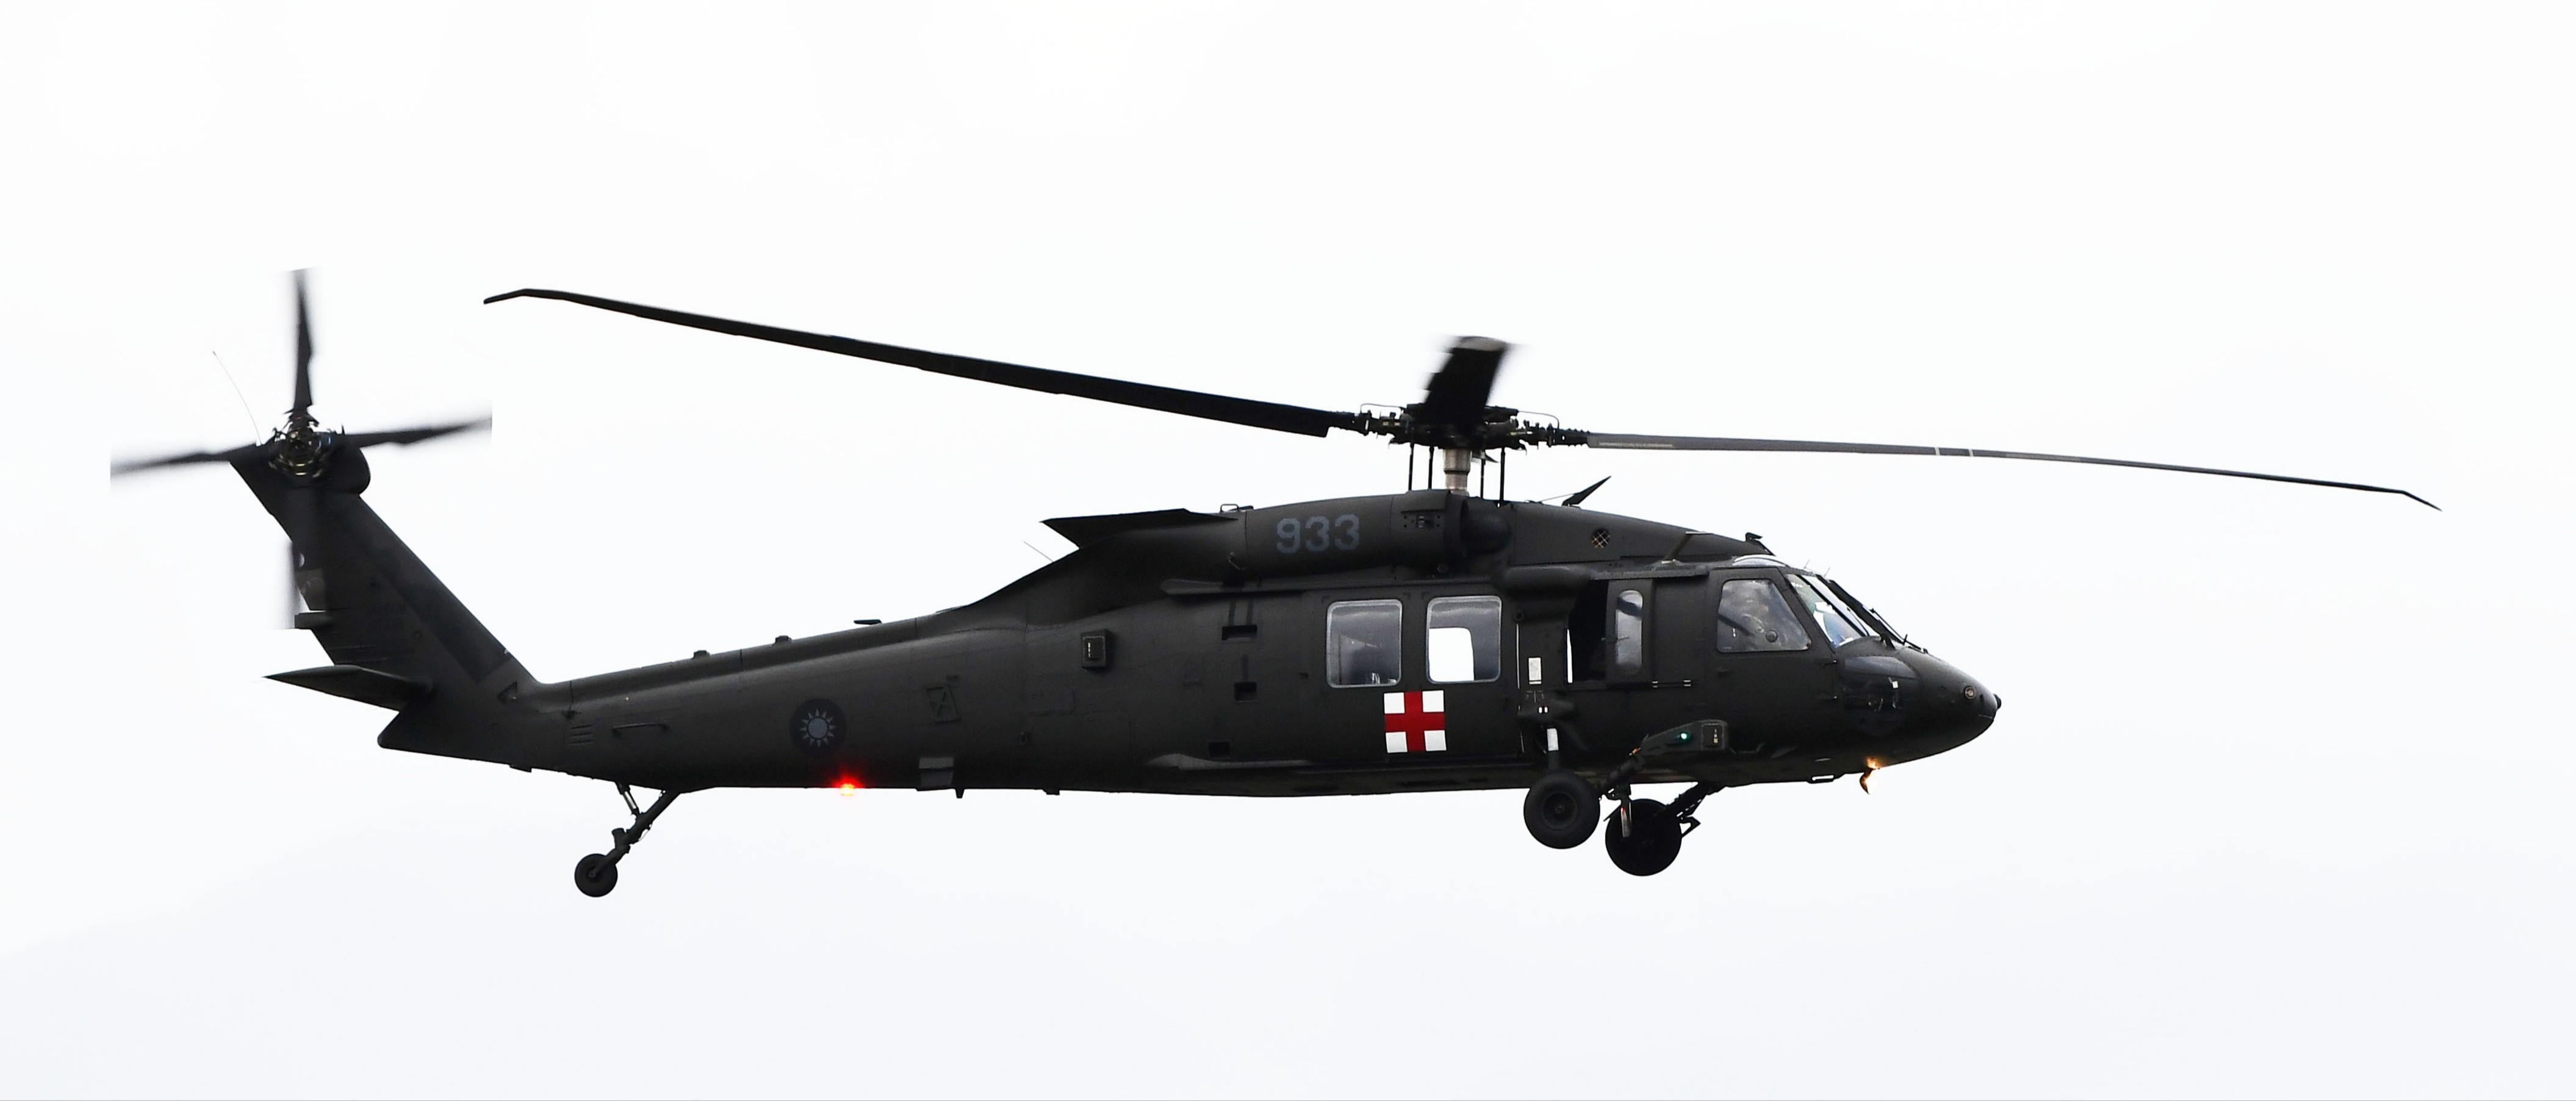 File:Sikorsky UH-60M Black Hawk 中華民國空軍救護隊 933 (Cropped